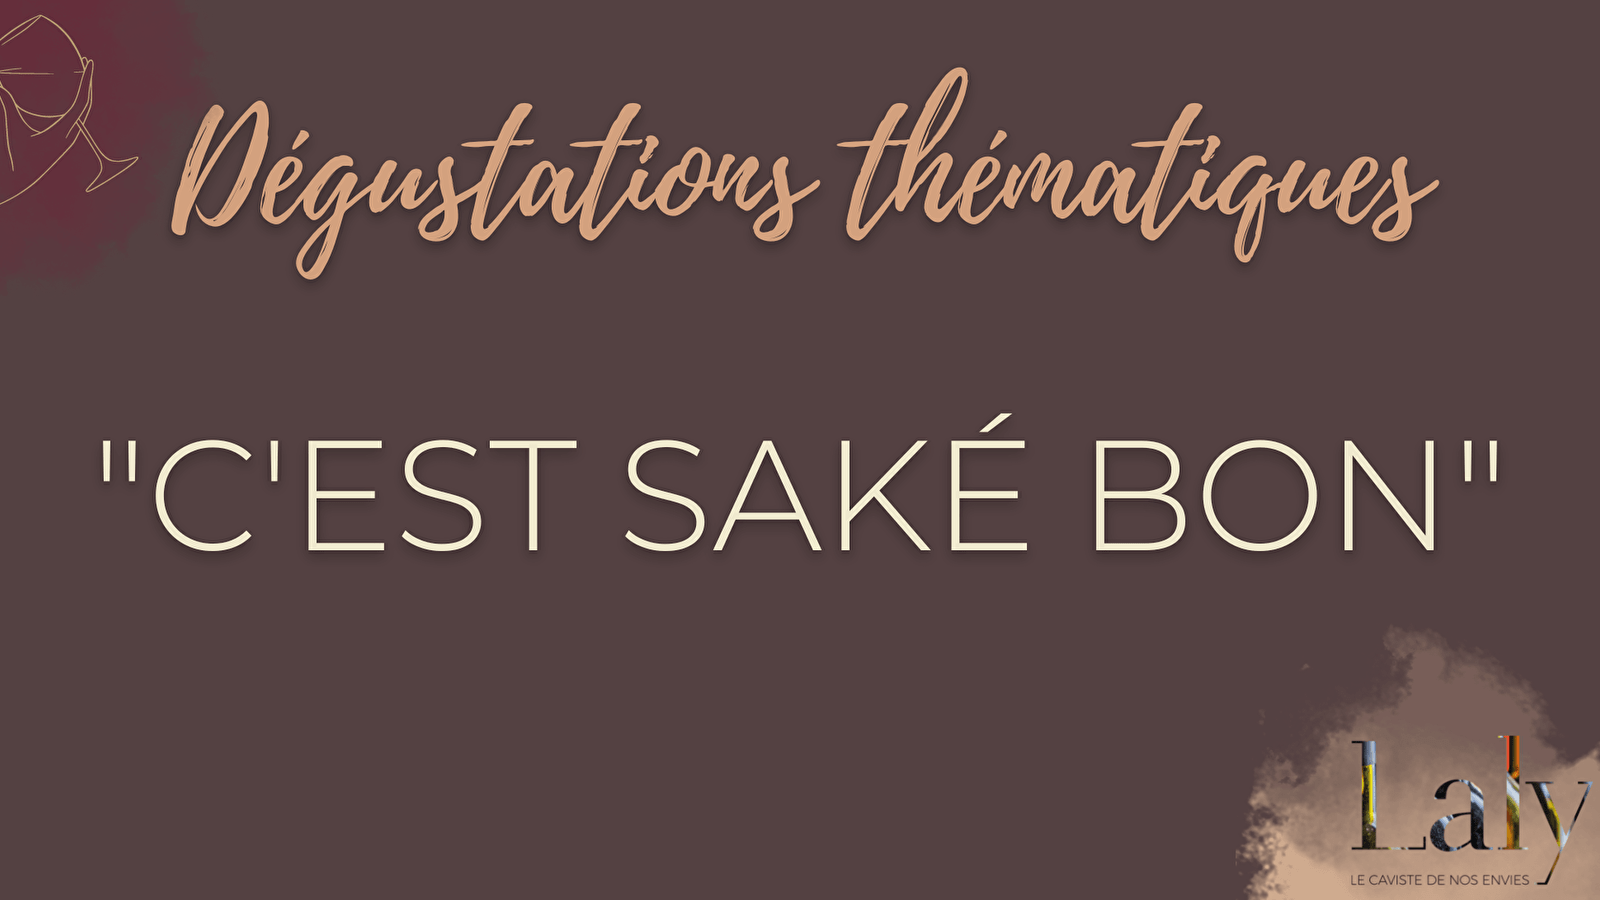 Sake-Verkostung 'C'est saké bon' (Es ist guter Sake)